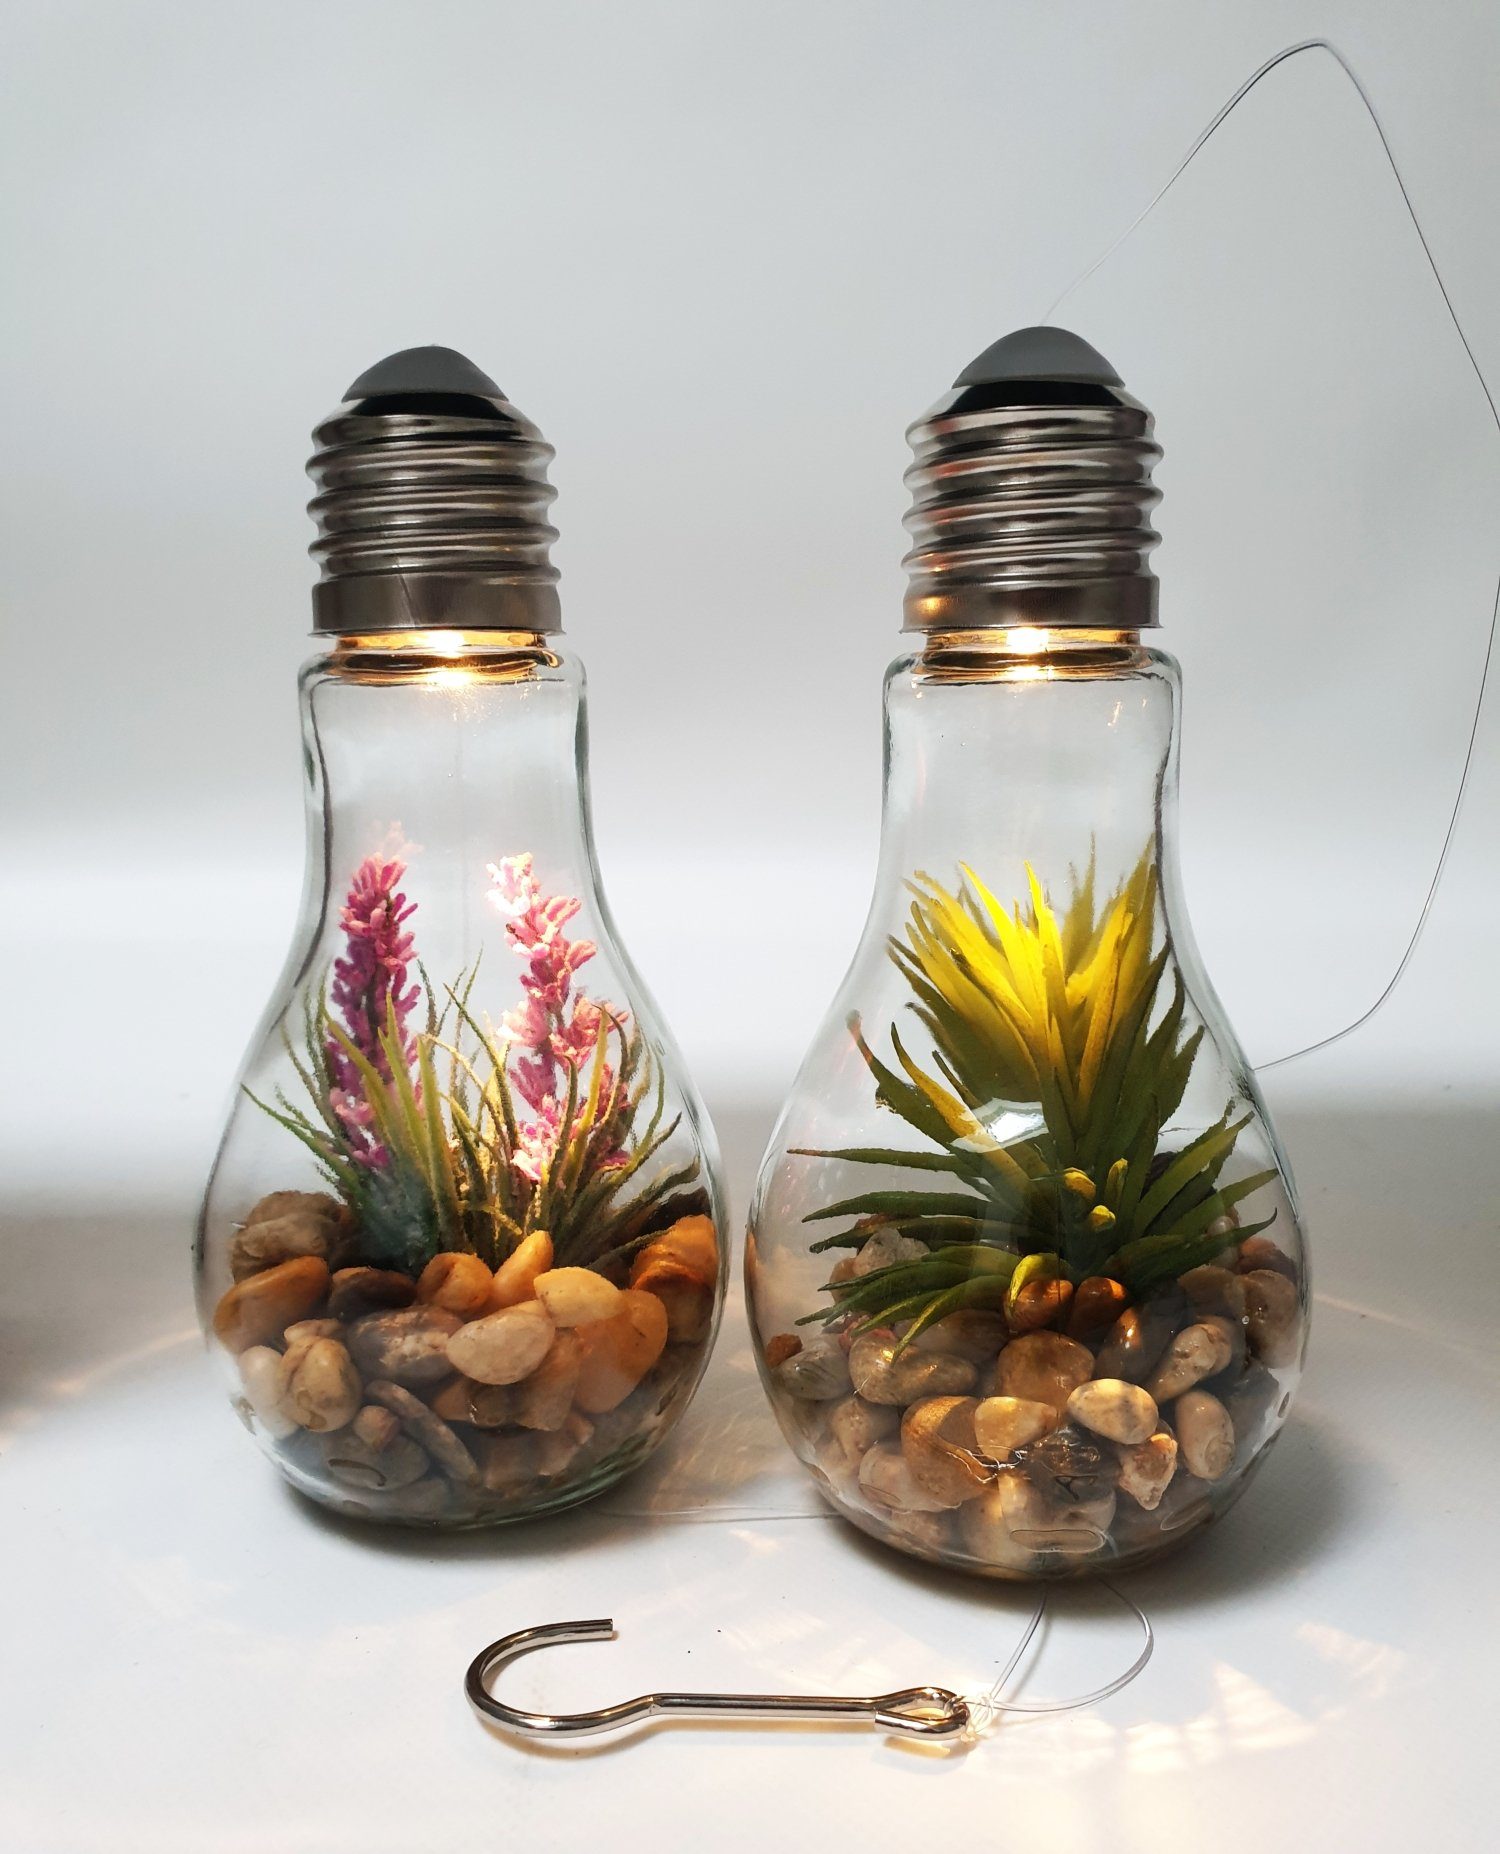 Thomas Philipps LED Dekolicht Glühbirne warmweiß LED Glas Dekolampe Deko Beleuchtung Kunstpflanze, Hängelampe